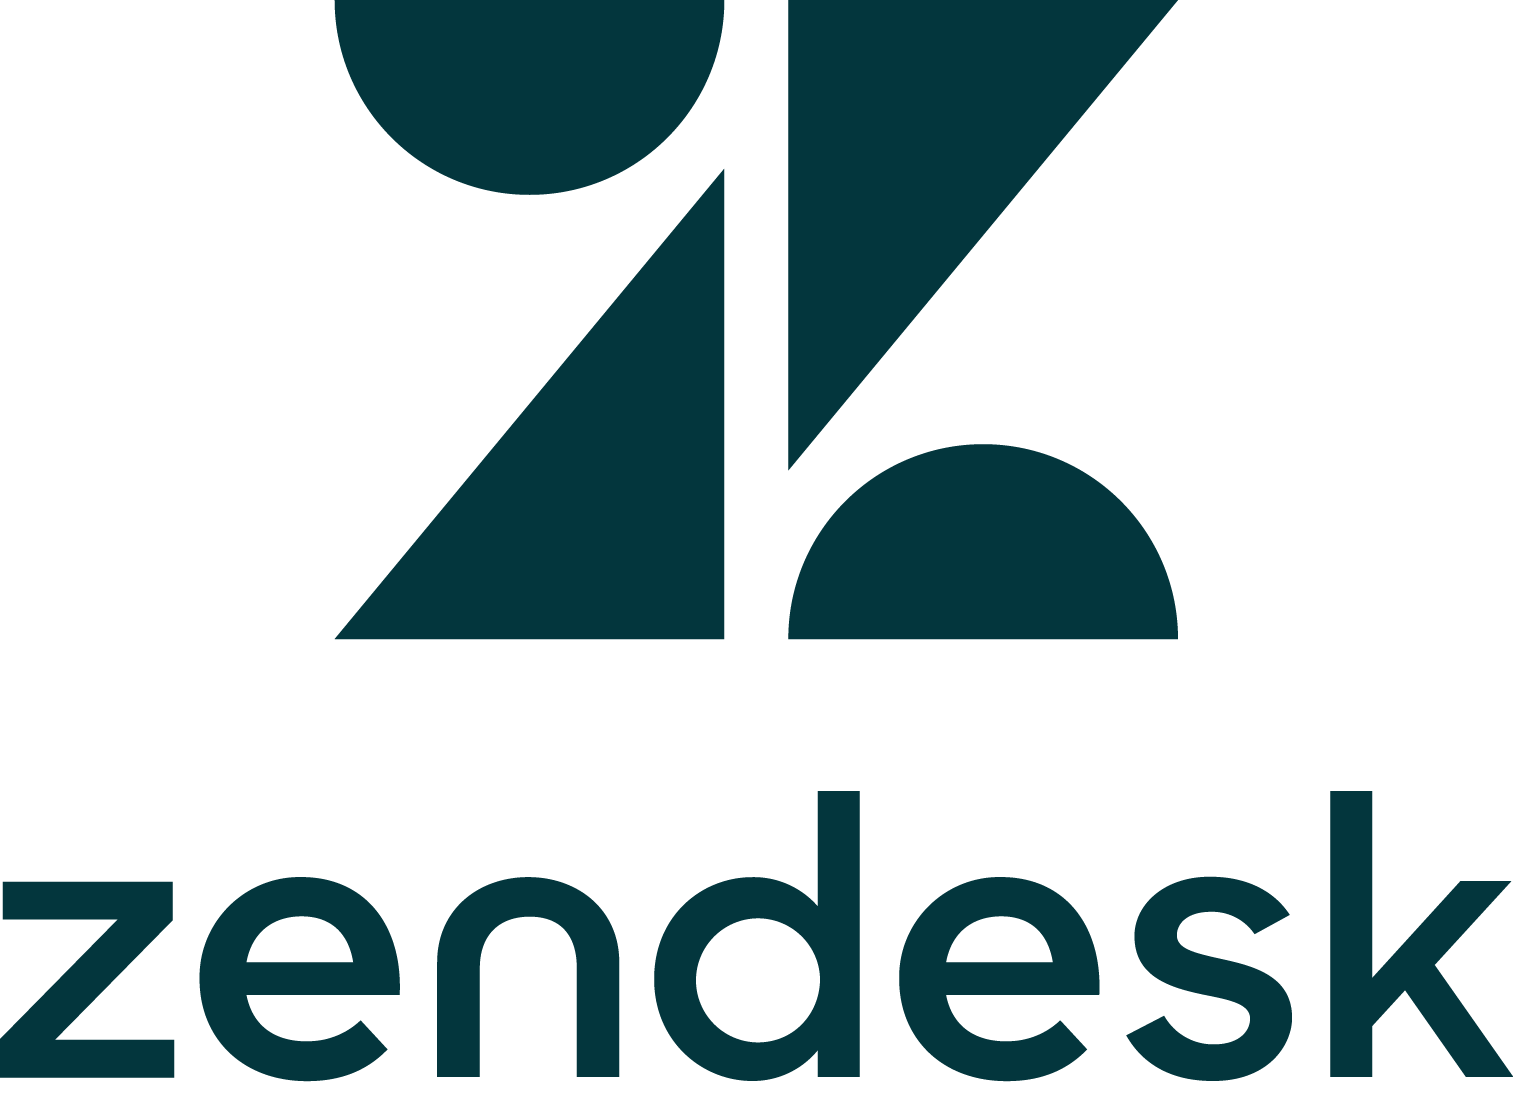 Zen desk logo